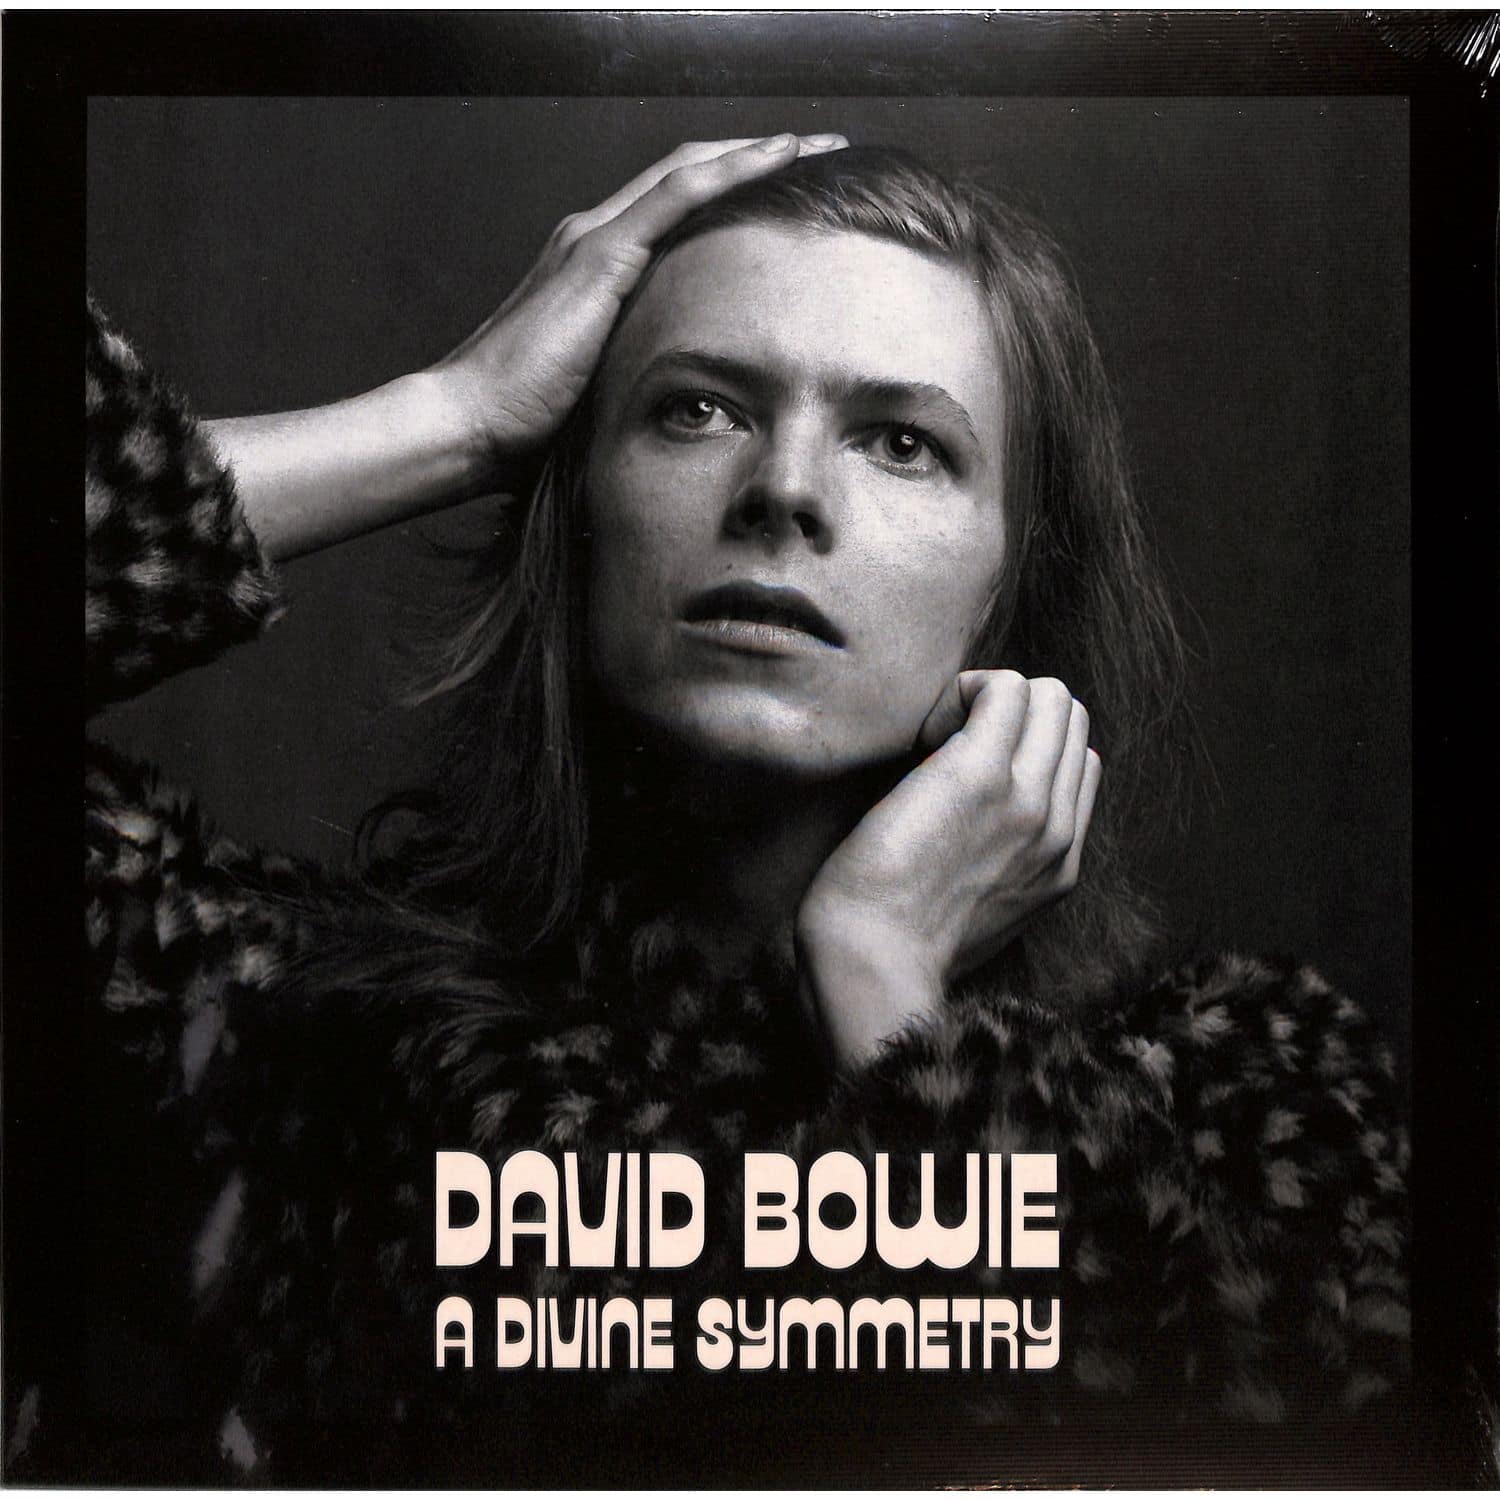 David Bowie - A DIVINE SYMMETRY